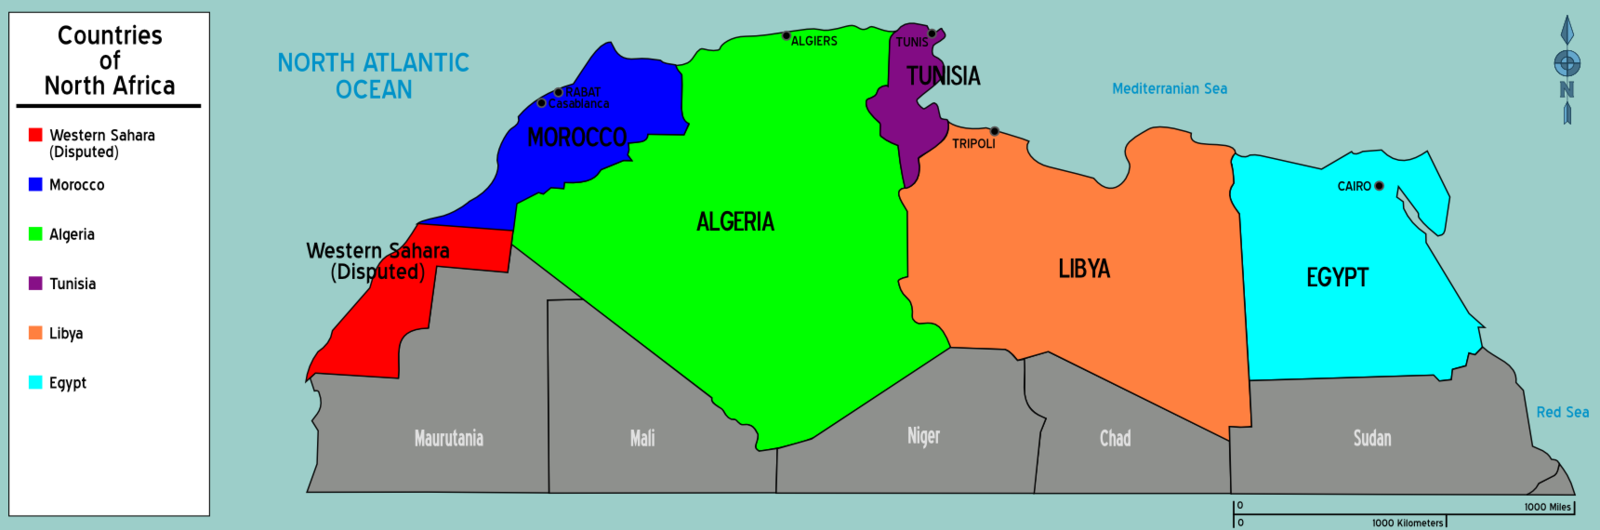 Магриба страны входящие. Страны Африки входящие в Союз арабского Магриба на карте. Северная Африка Магриб. Союз арабского Магриба на карте Африки. Союз арабского Магриба на карте.